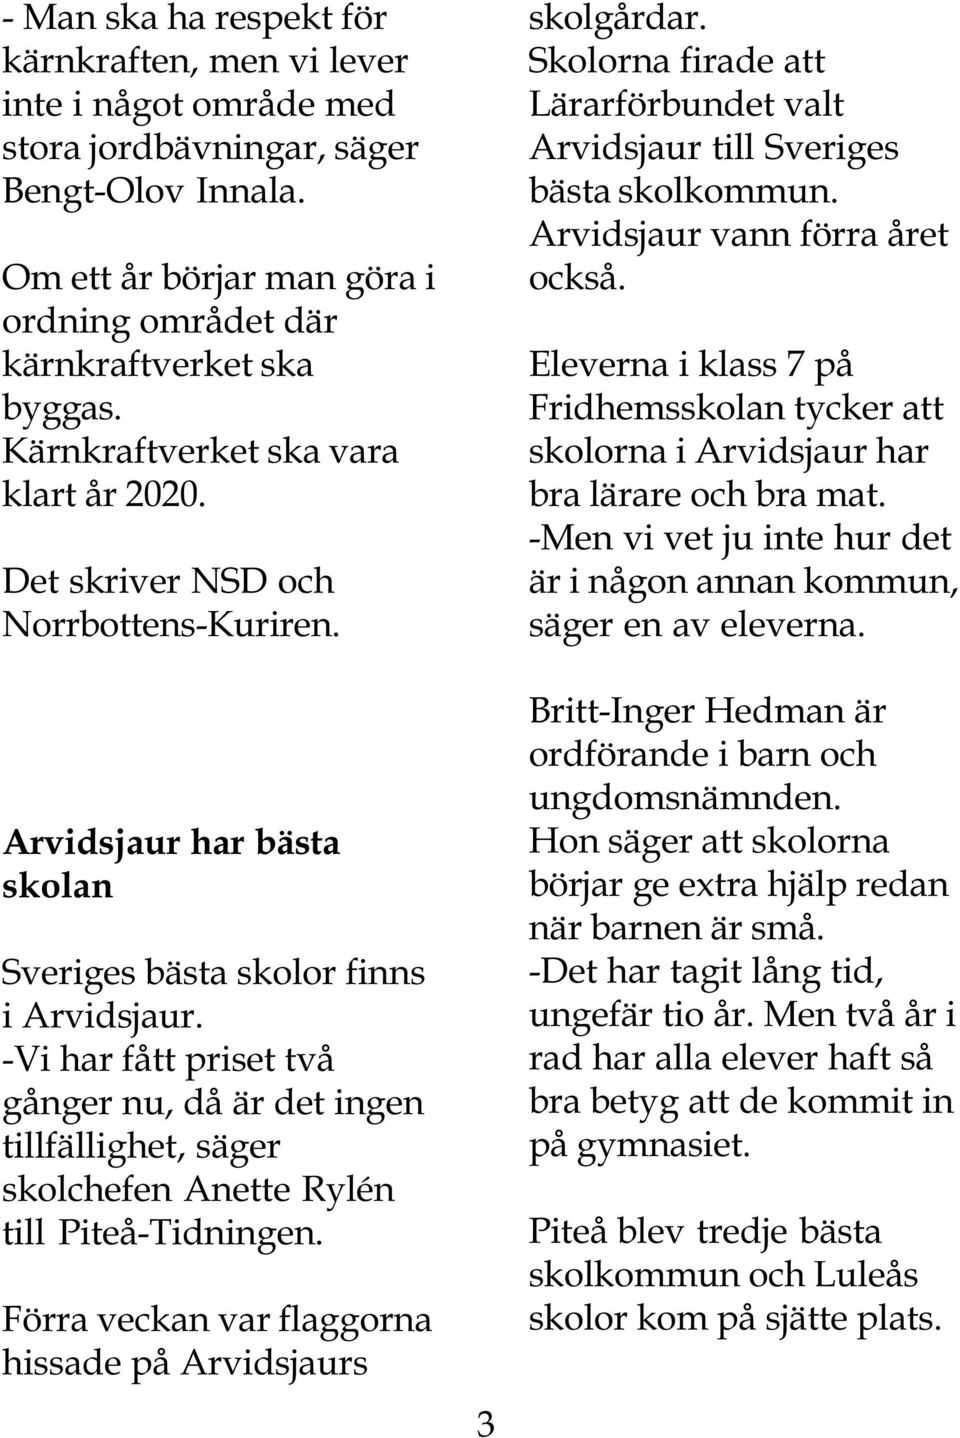 -Vi har fått priset två gånger nu, då är det ingen tillfällighet, säger skolchefen Anette Rylén till Piteå-Tidningen. Förra veckan var flaggorna hissade på Arvidsjaurs 3 skolgårdar.